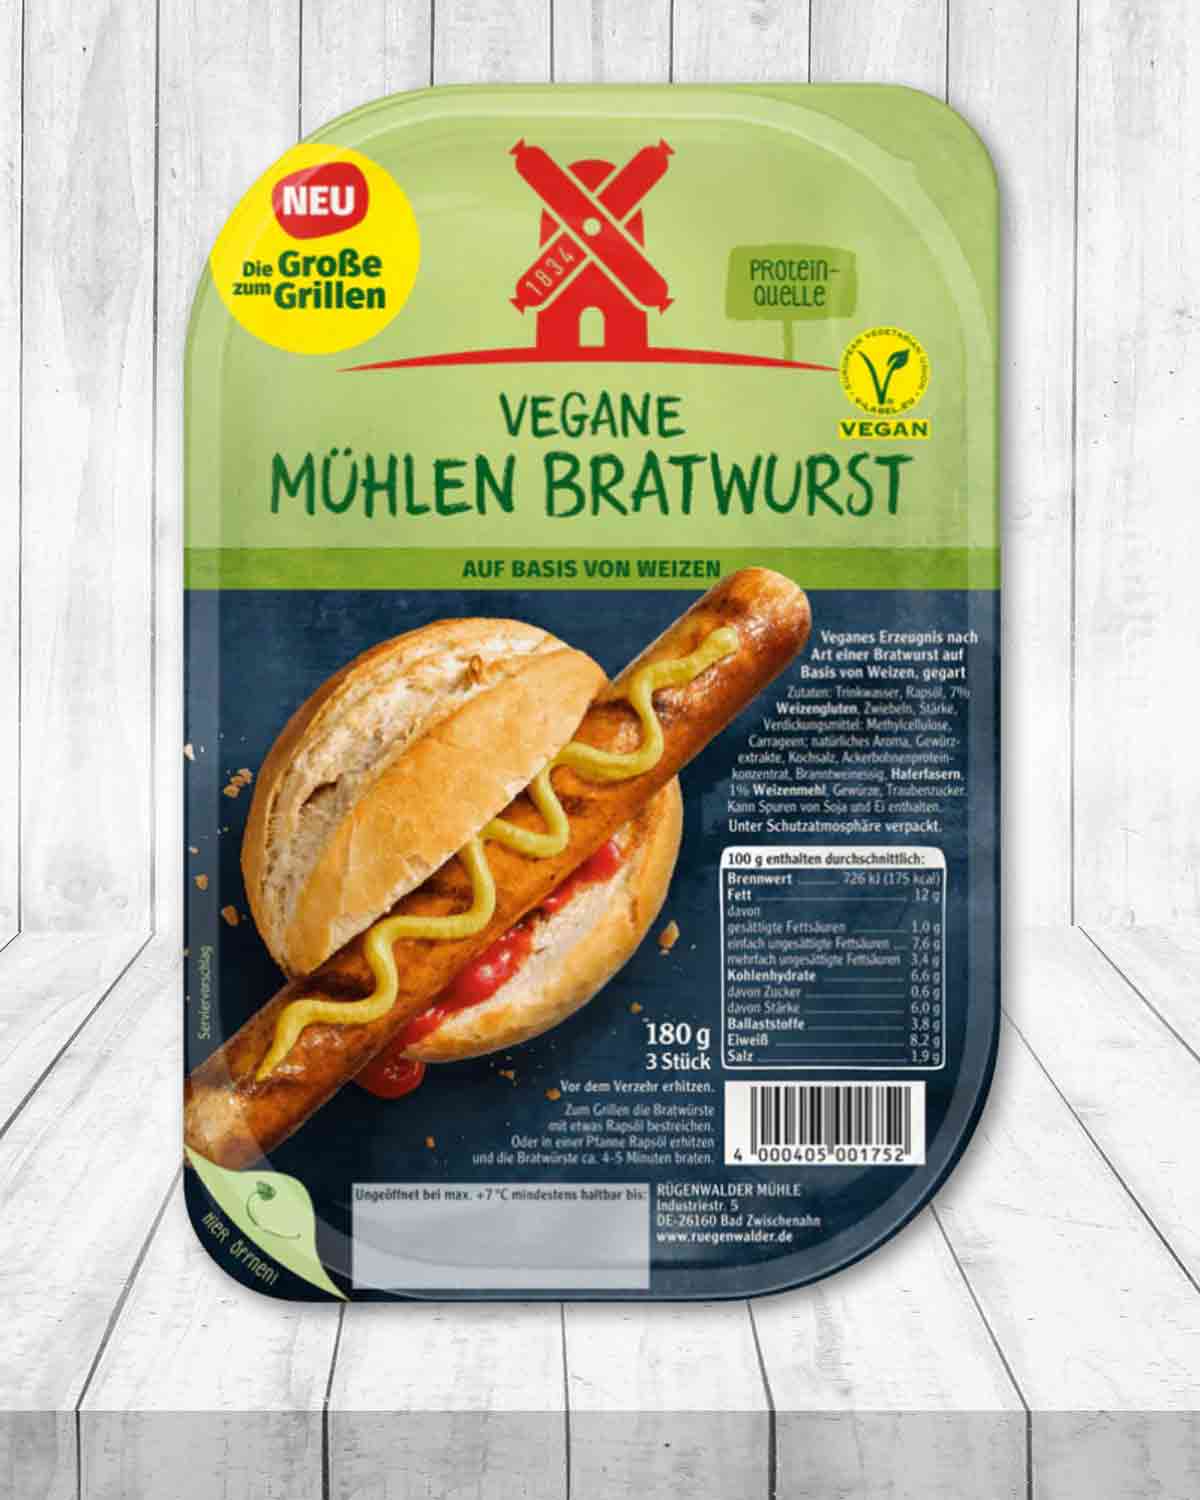 Vegane Mühlen Bratwurst